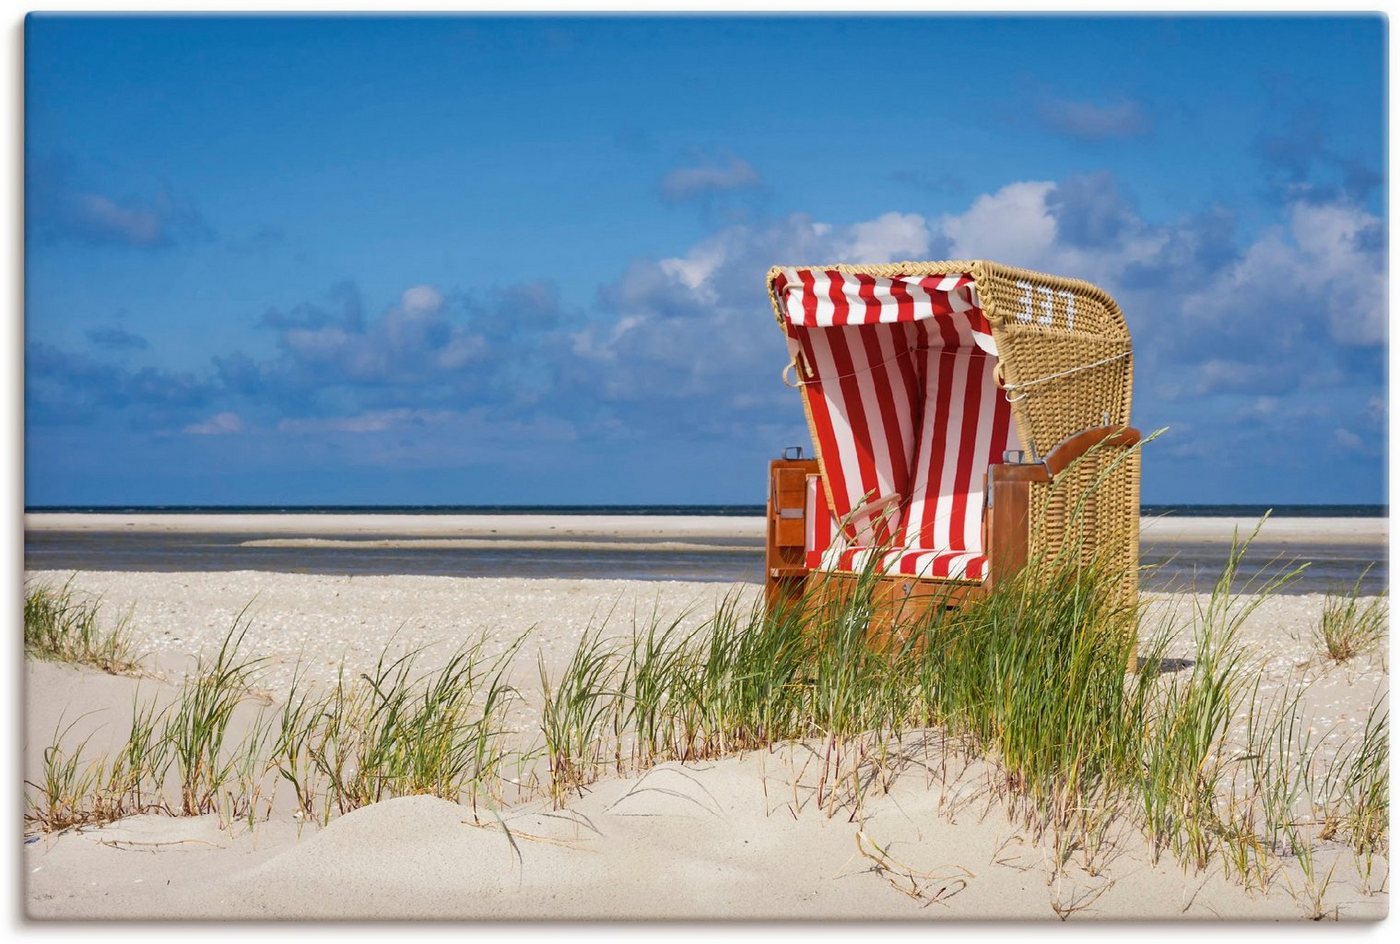 ARTland. & Gartenmöbel Strandkörbe kaufen & Online bei und Sonneninseln Möbel andere von